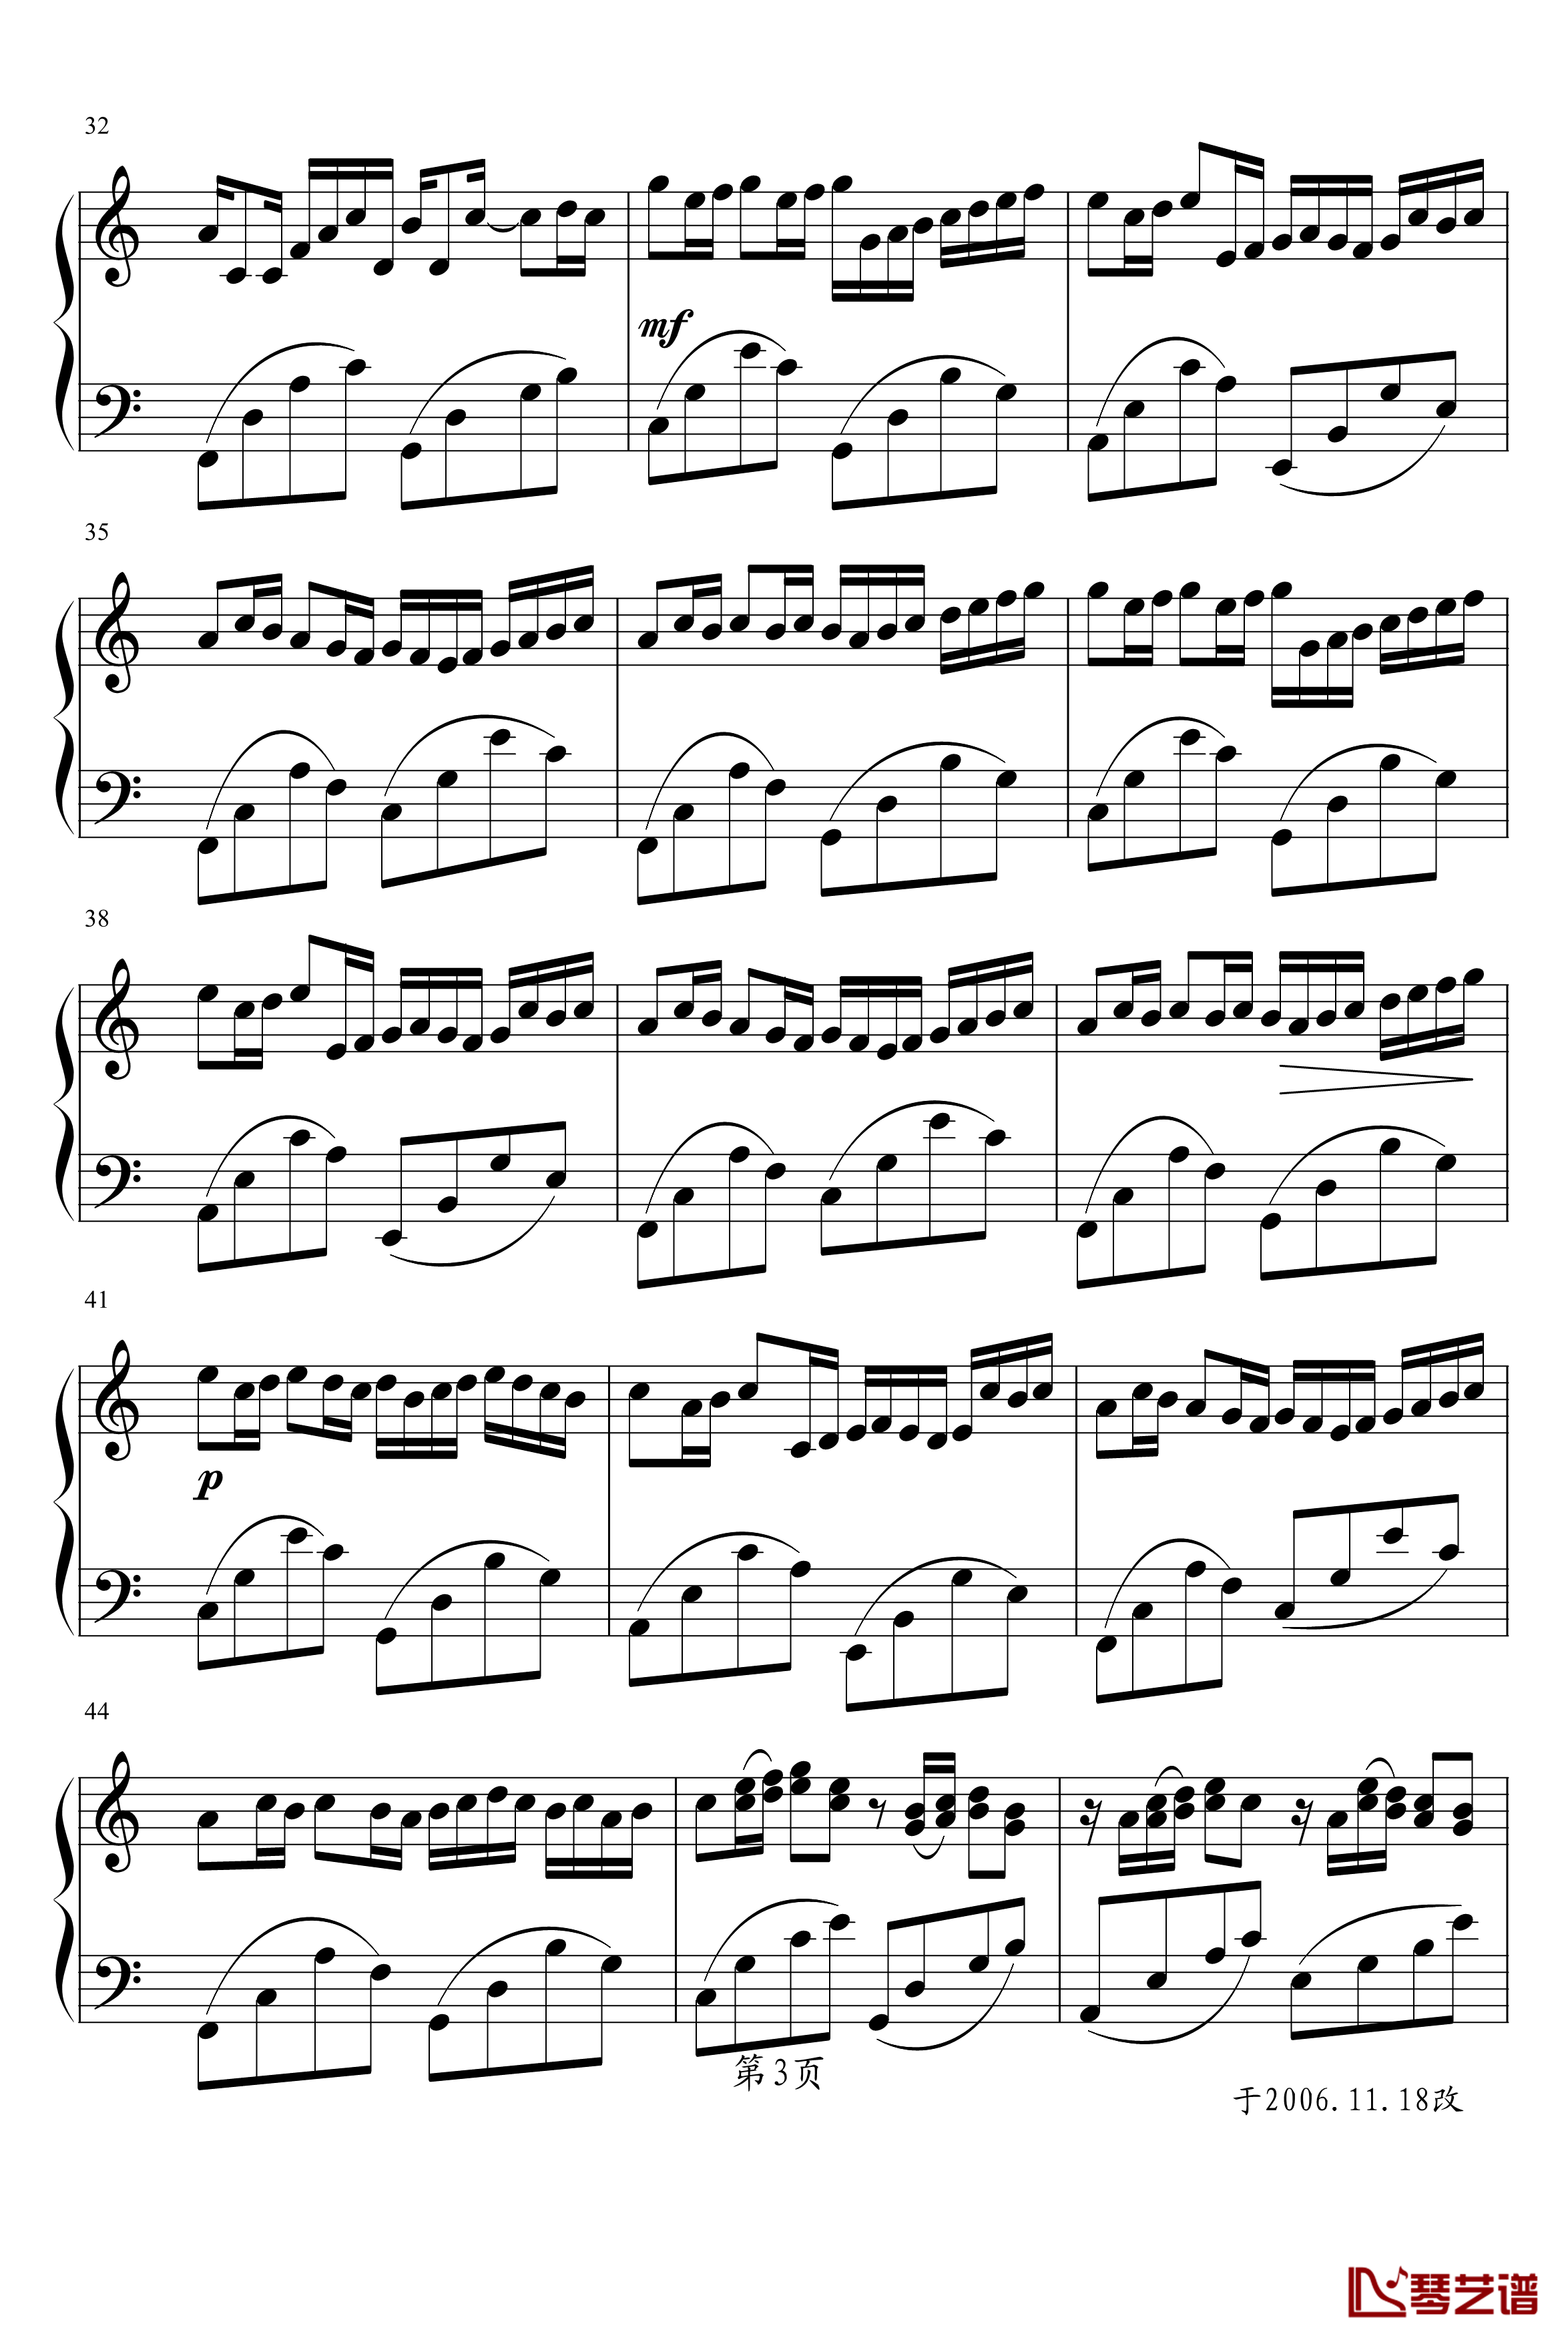 卡农钢琴谱-冯明东版-帕赫贝尔-Pachelbel3